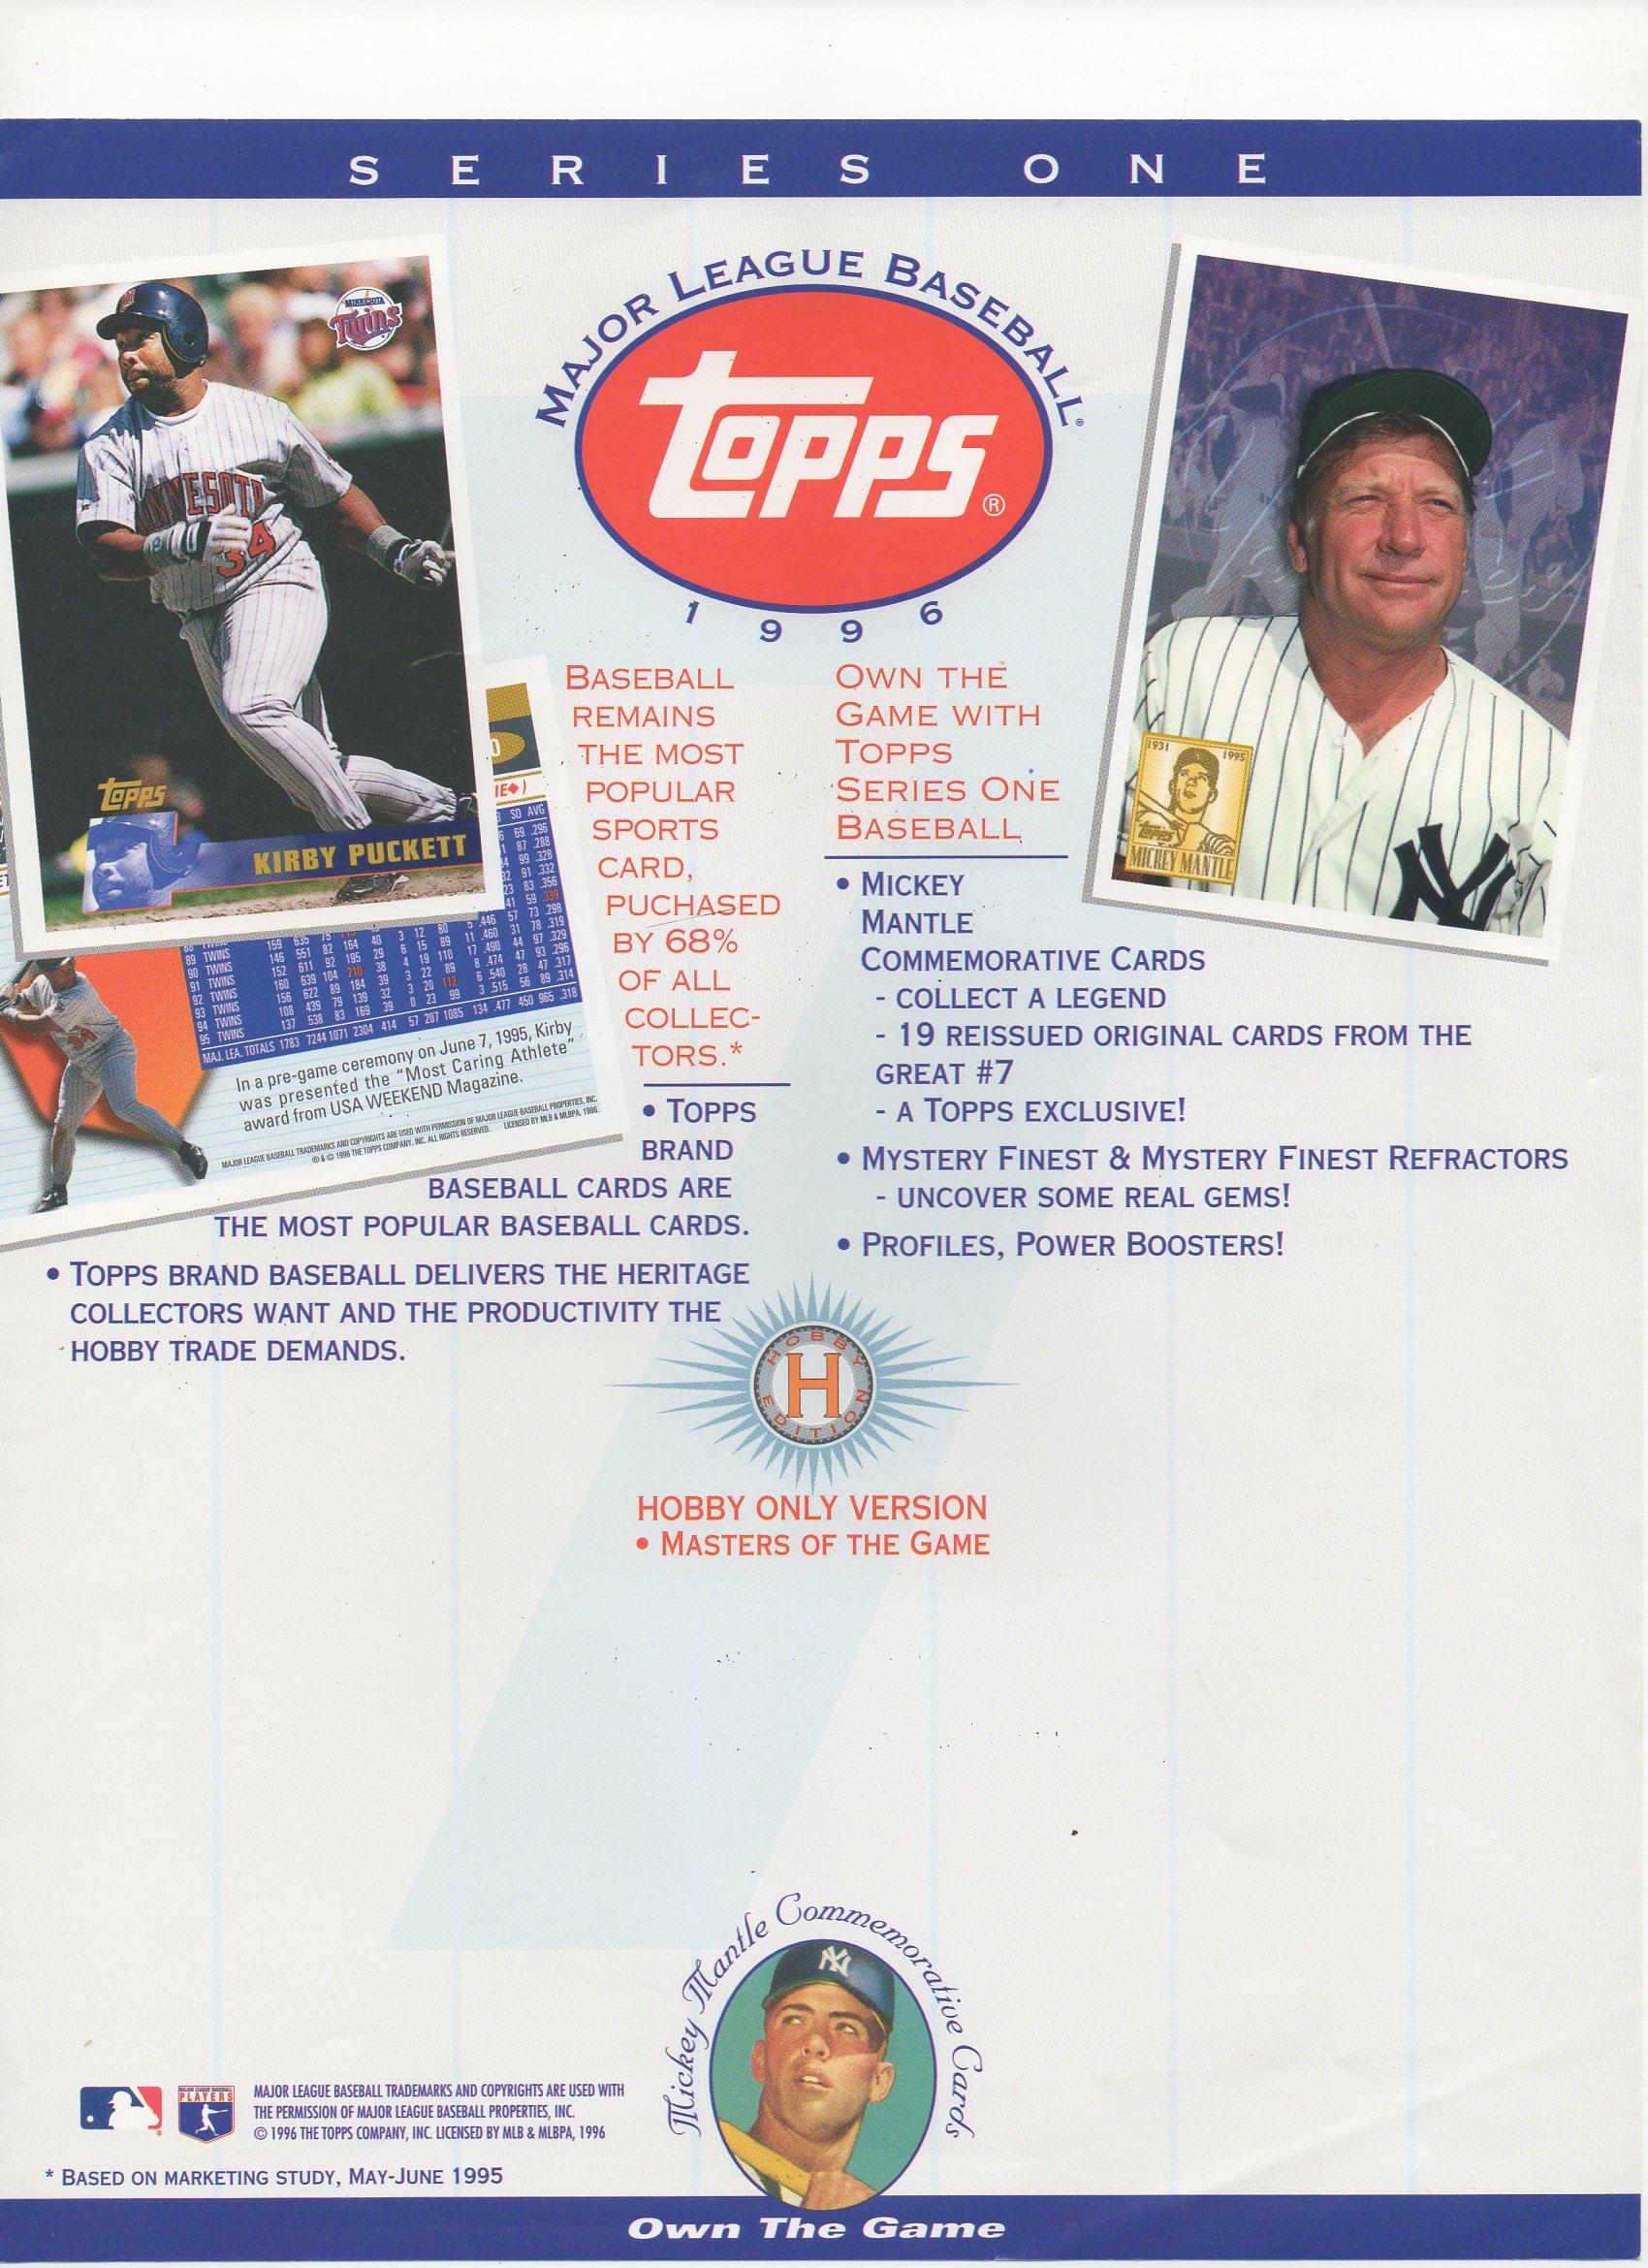 1995 topps series 1, blank back flyer